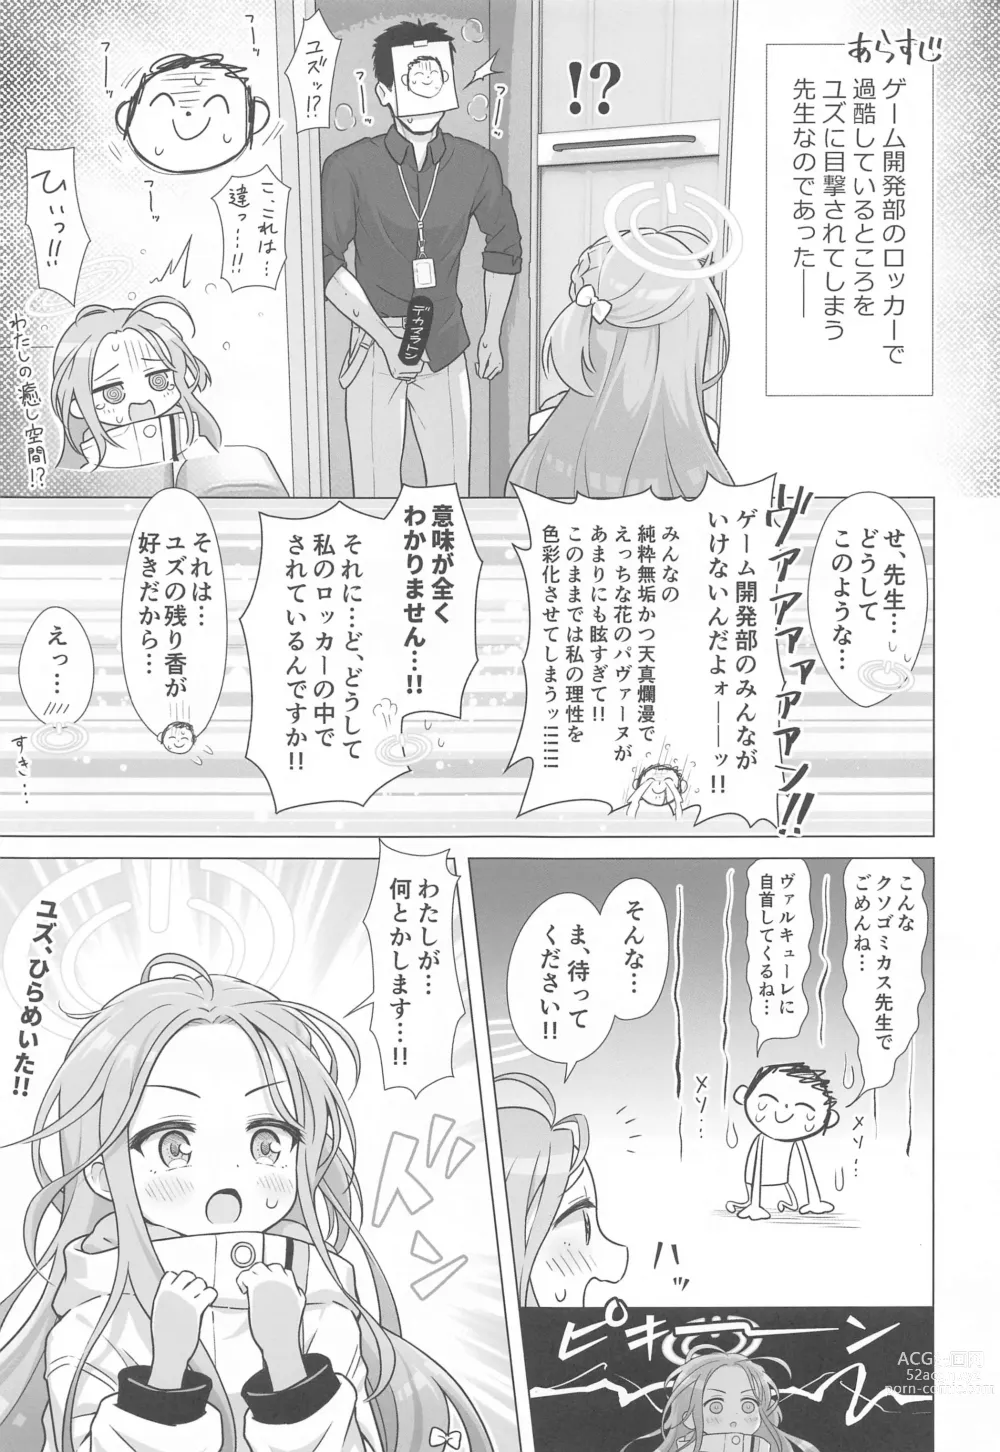 Page 4 of doujinshi Yuzu Ana